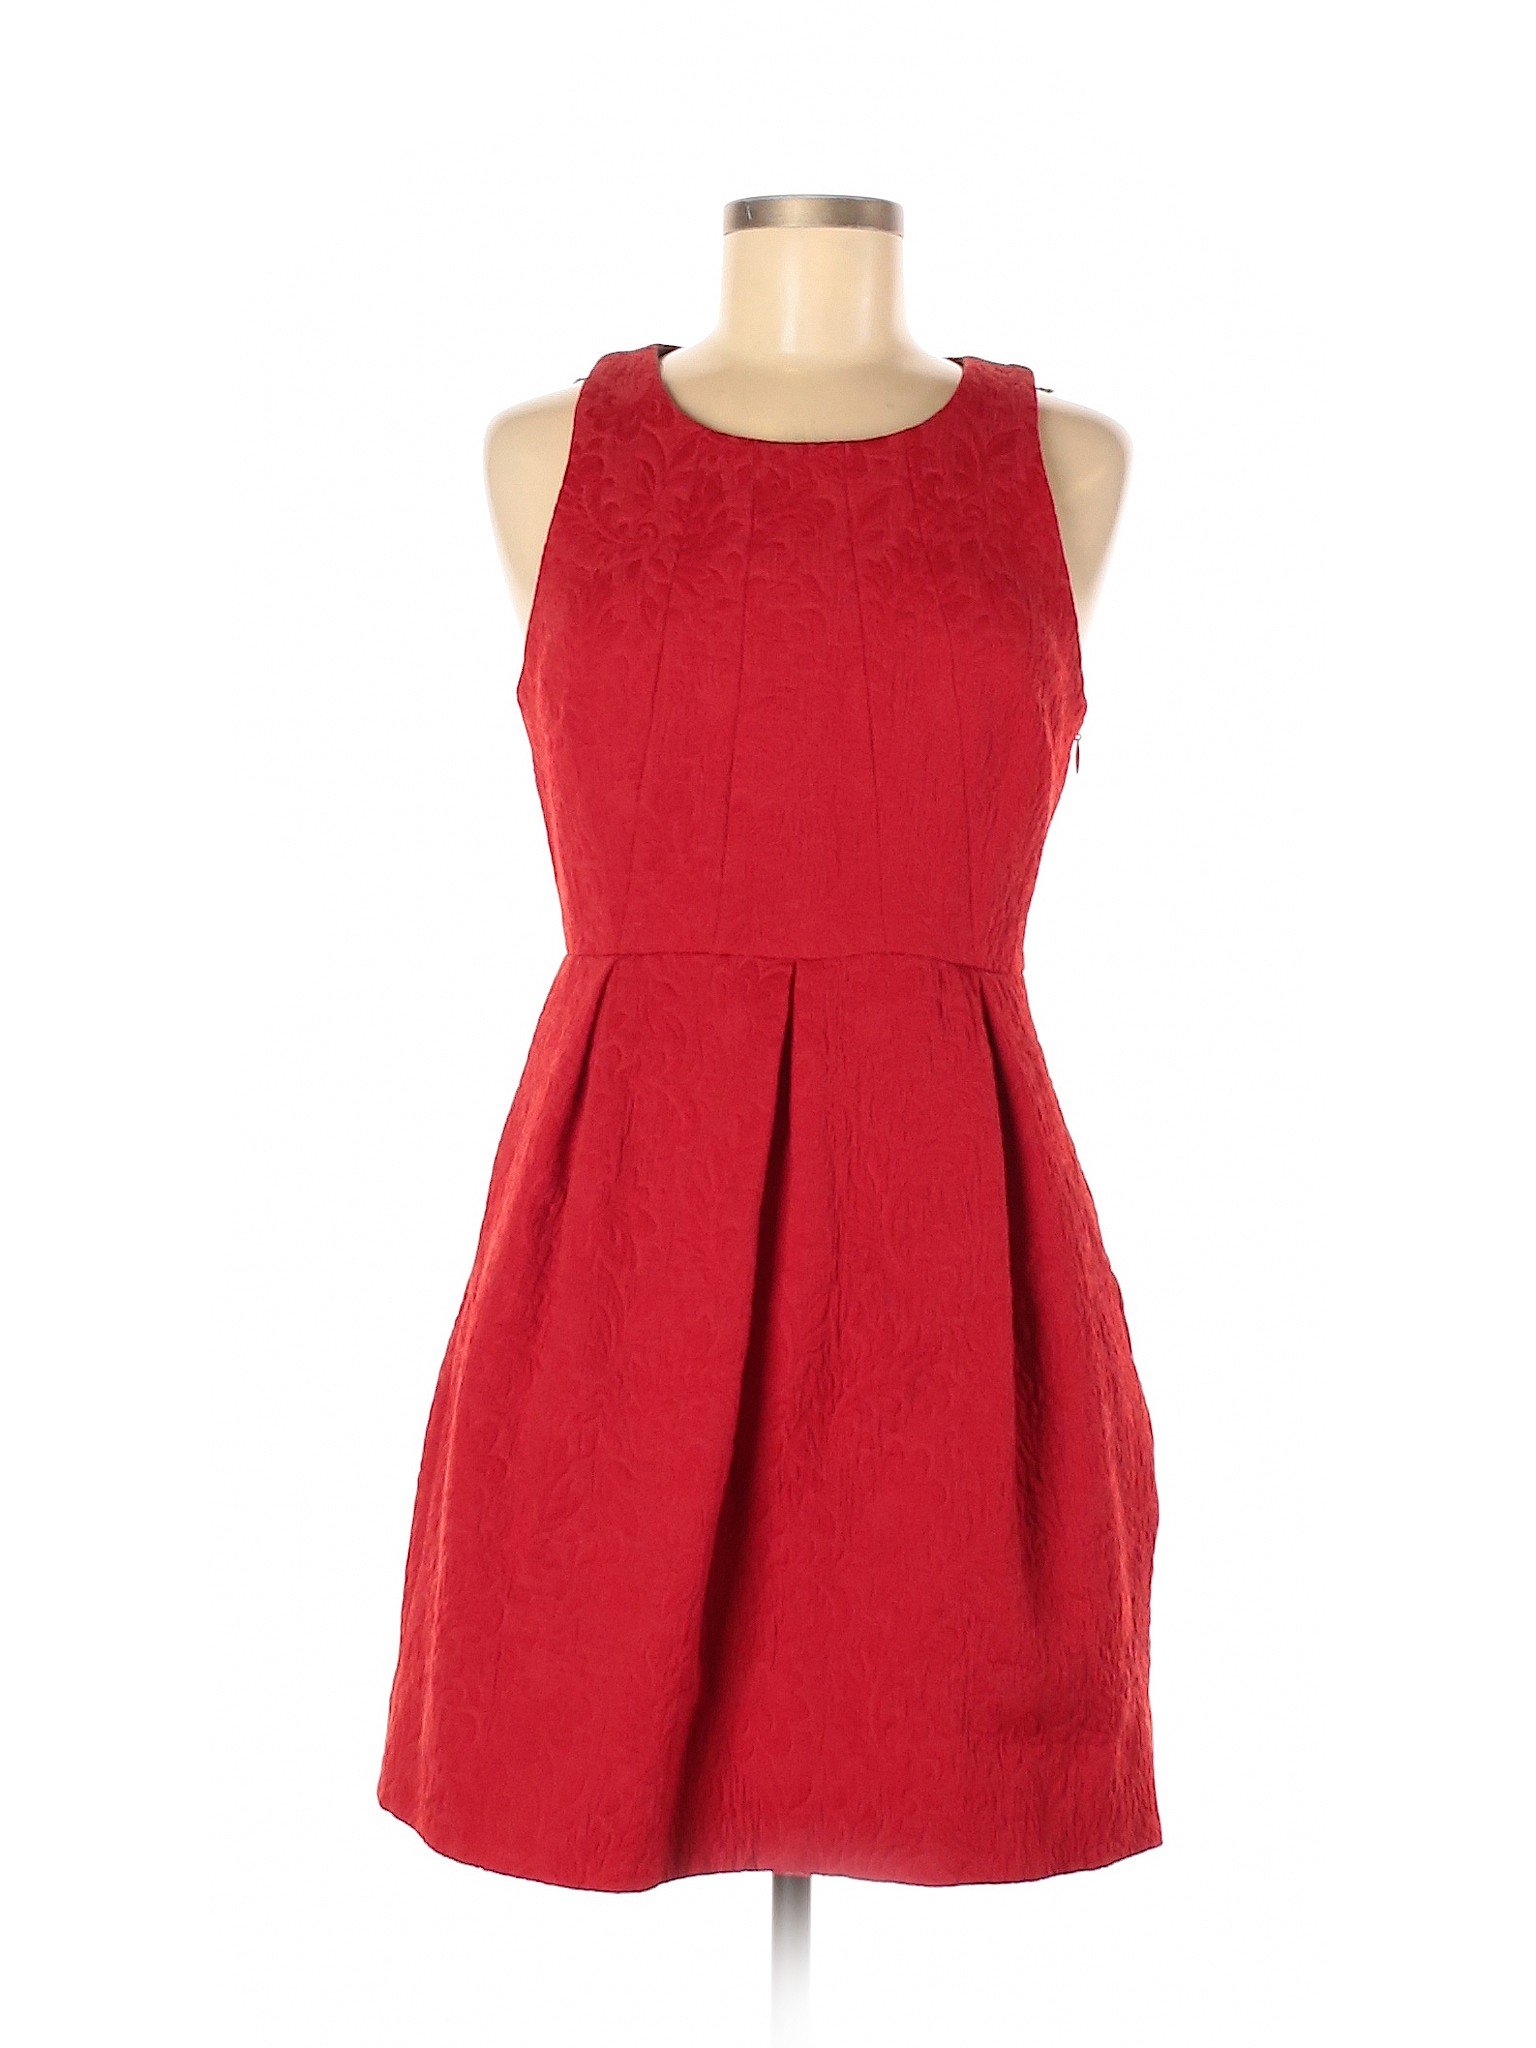 Moulinette Soeurs Women Red Casual Dress 6 | eBay